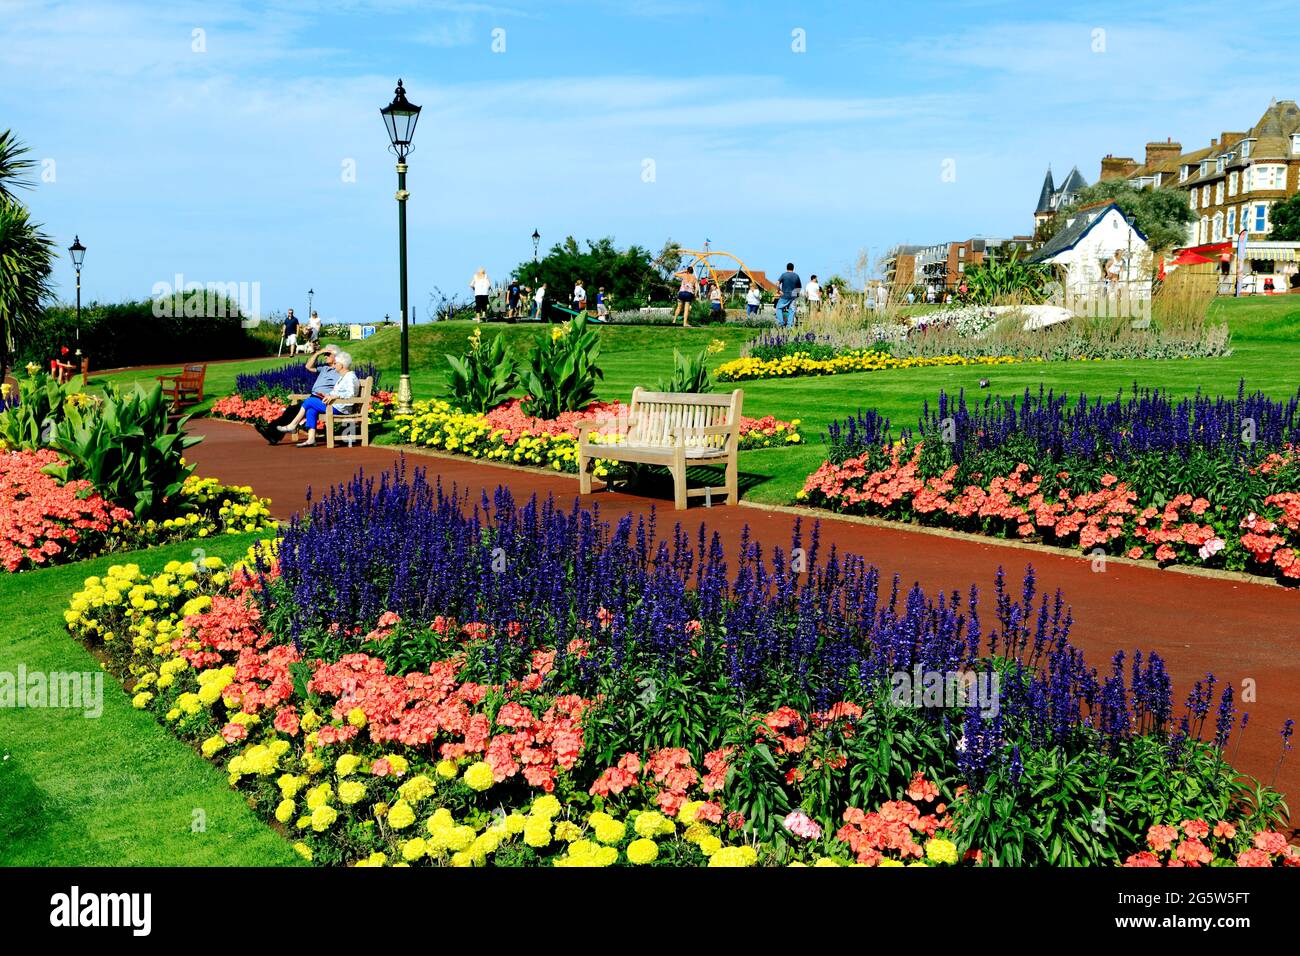 Esplanade Gardens, Cliff top, Hunstanton, Norfolk, England, UK, seaside resort Stock Photo